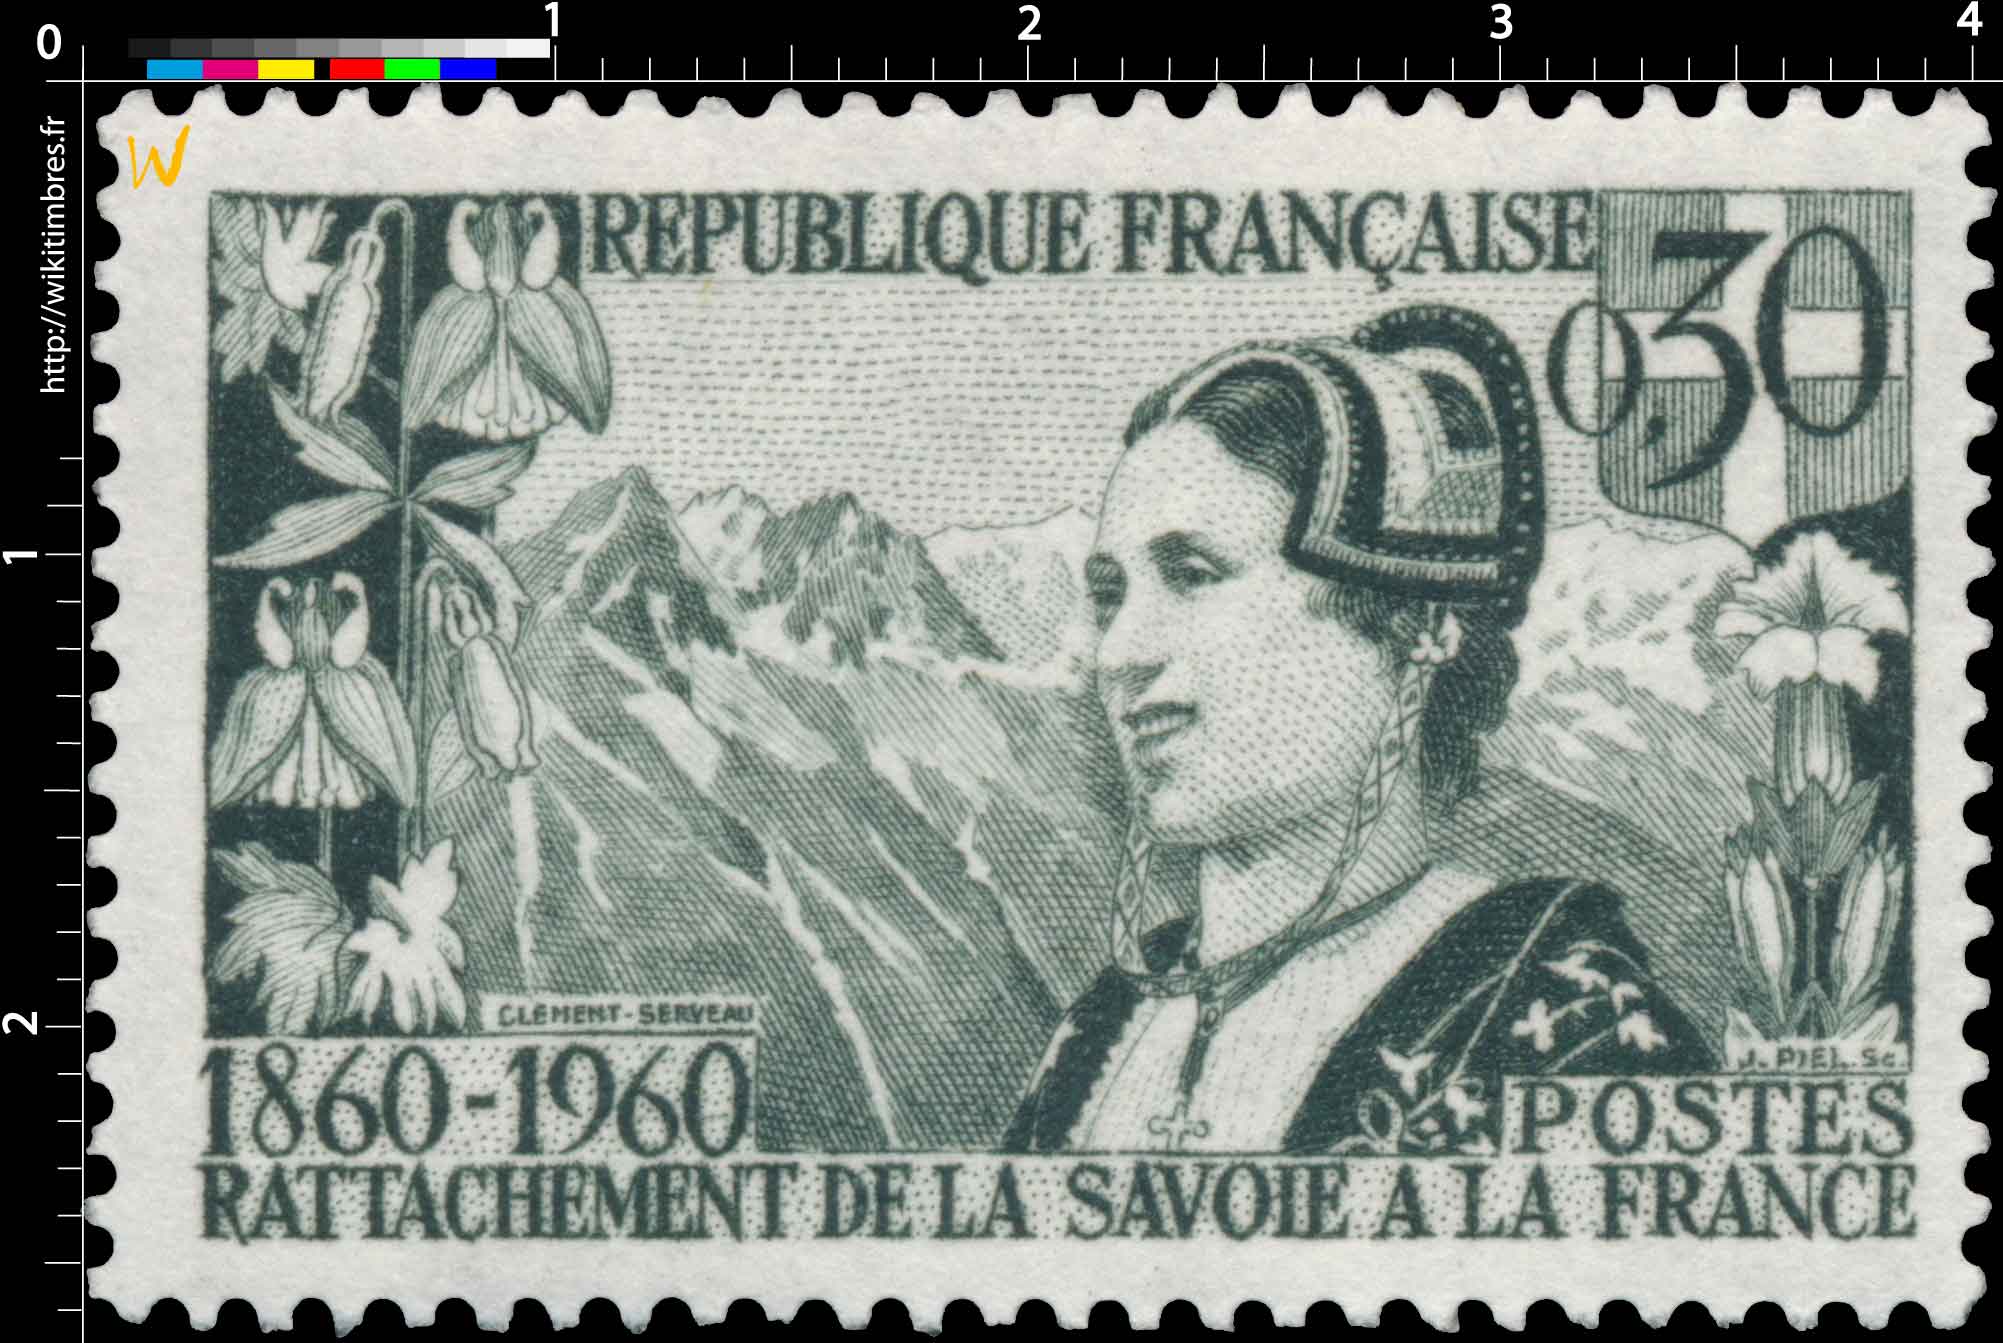 RATTACHEMENT DE LA SAVOIE A LA FRANCE 1860-1960